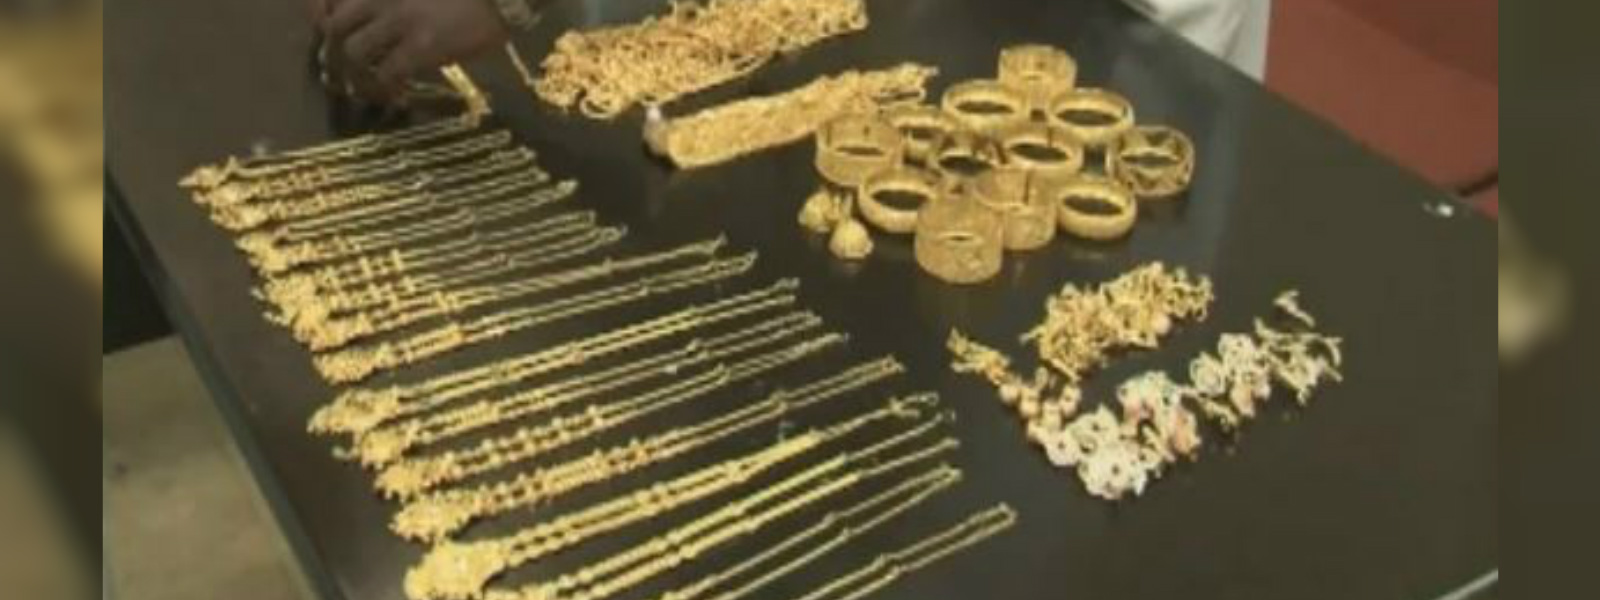 Jewellery store heist in Dodangaslanda